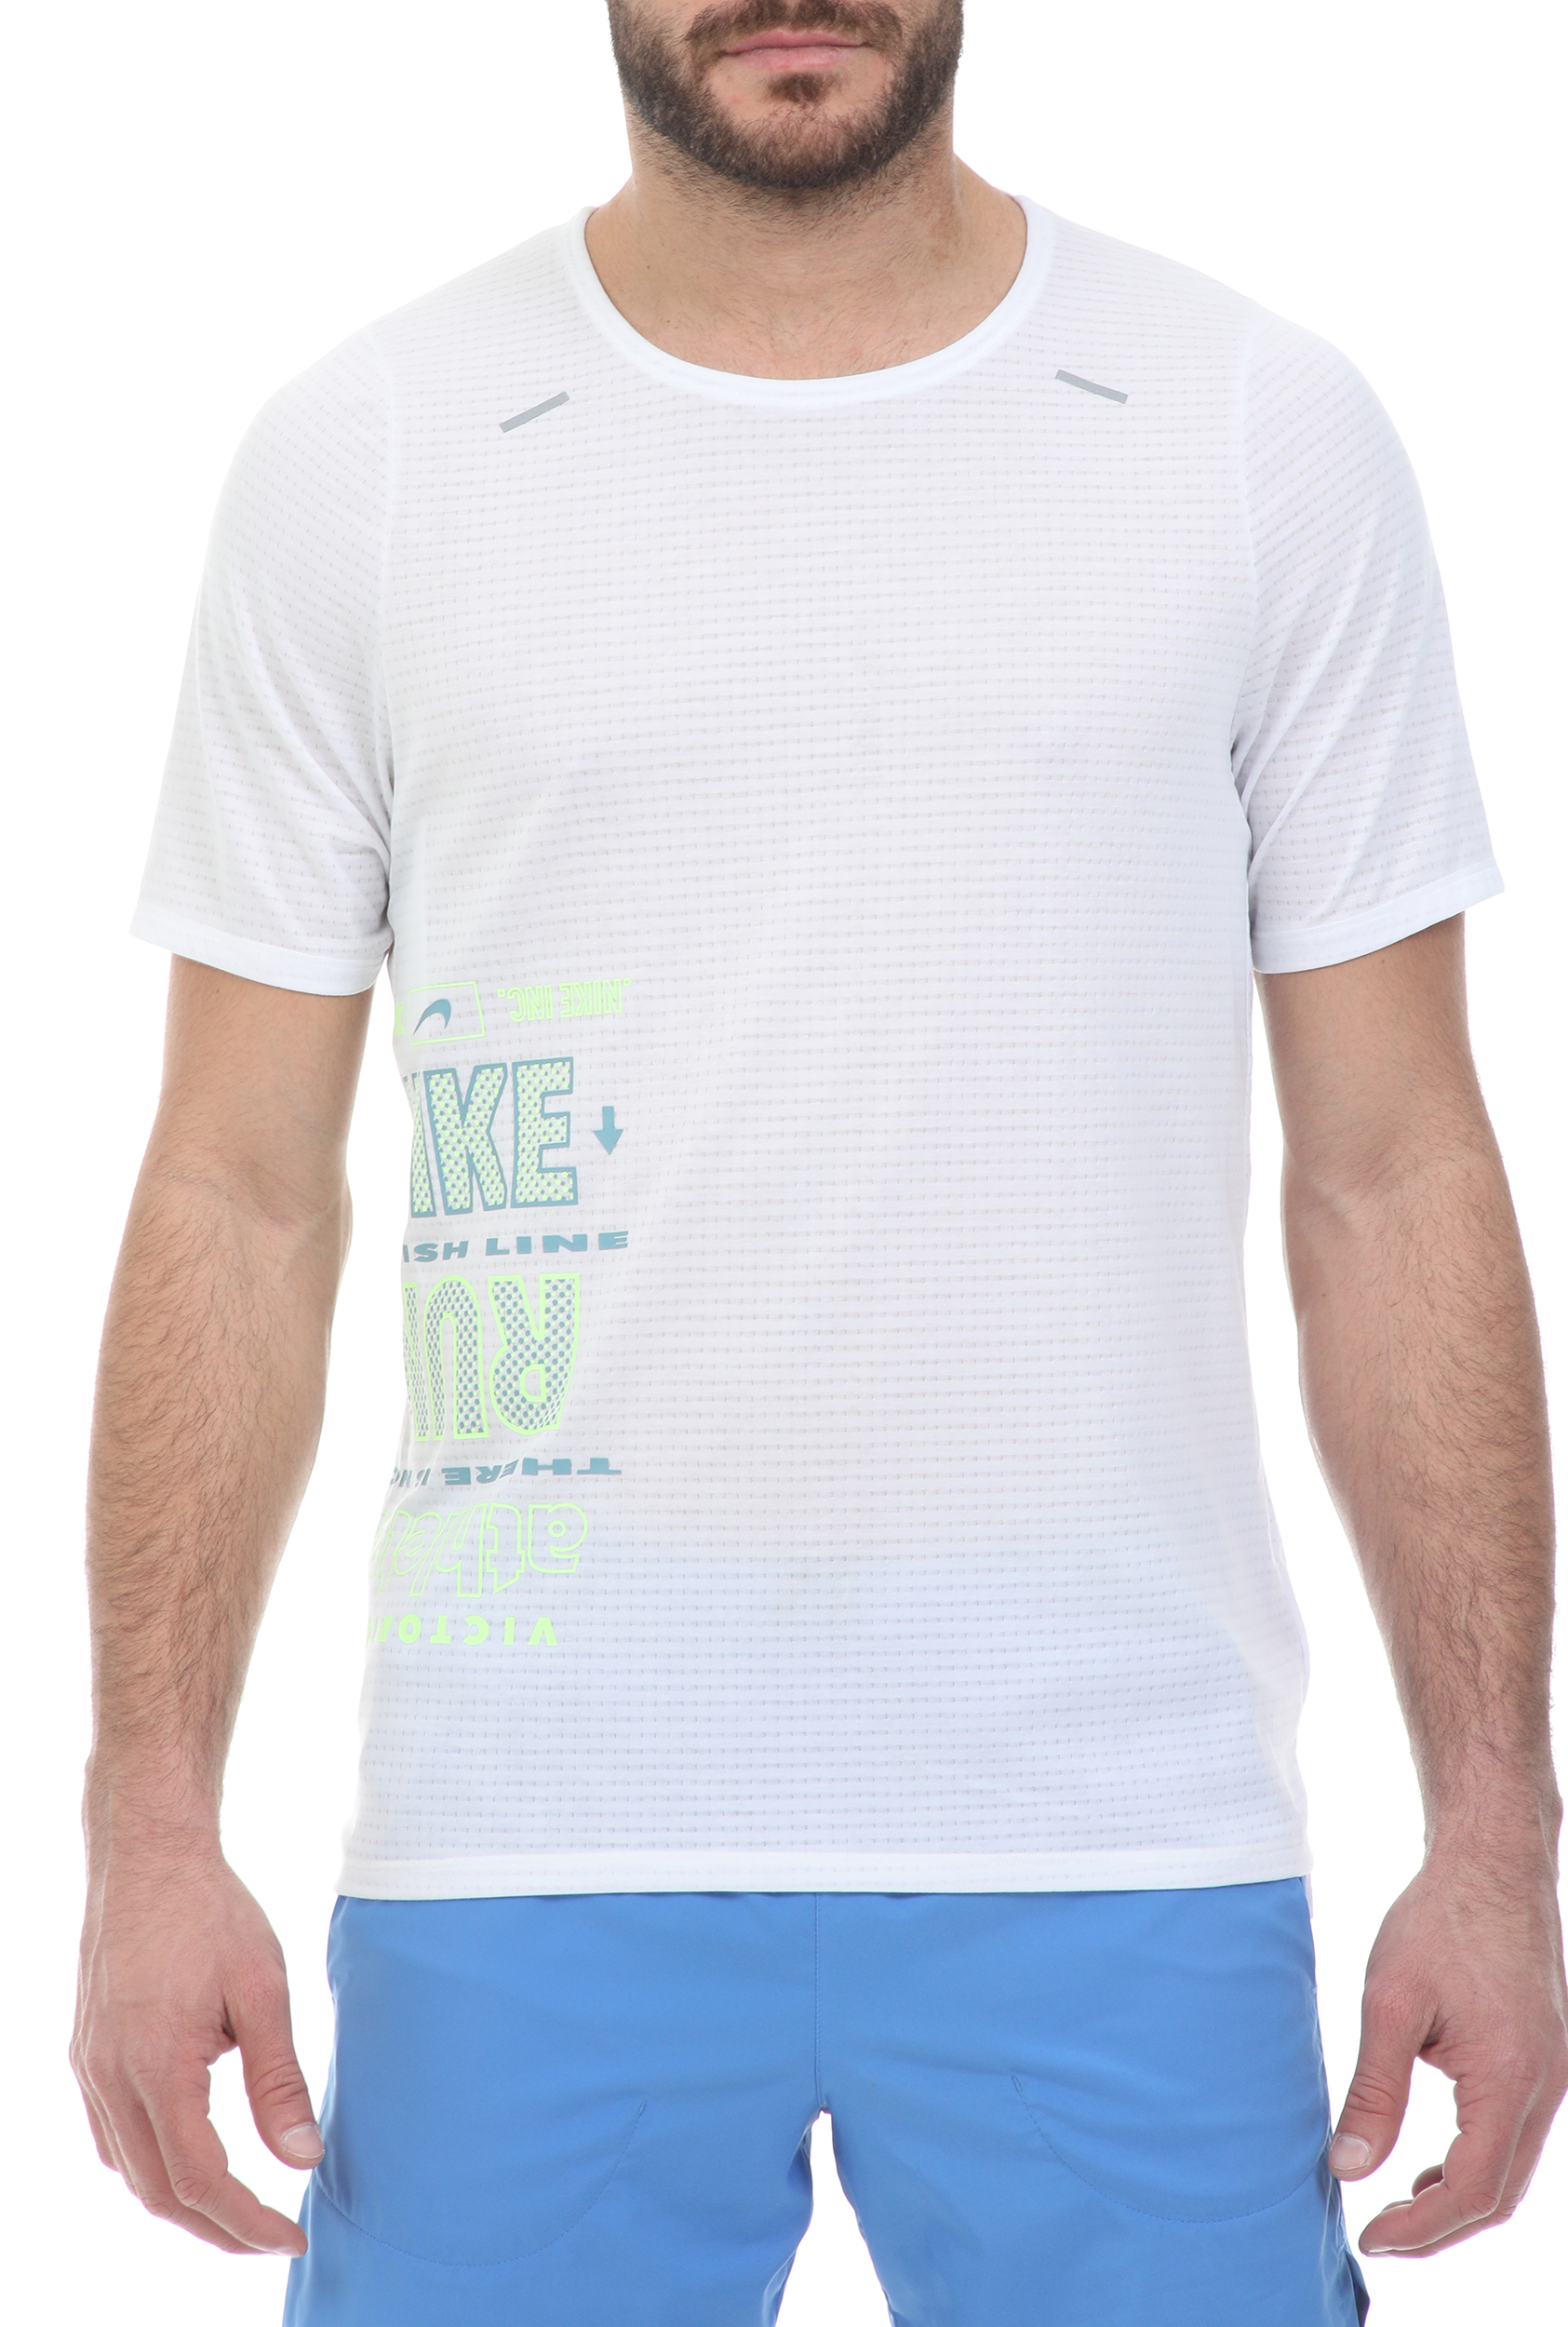 Ανδρικά/Ρούχα/Αθλητικά/T-shirt NIKE - Ανδρικό t-shirt NIKE WILD RUN RISE 365 TOP SS λευκό